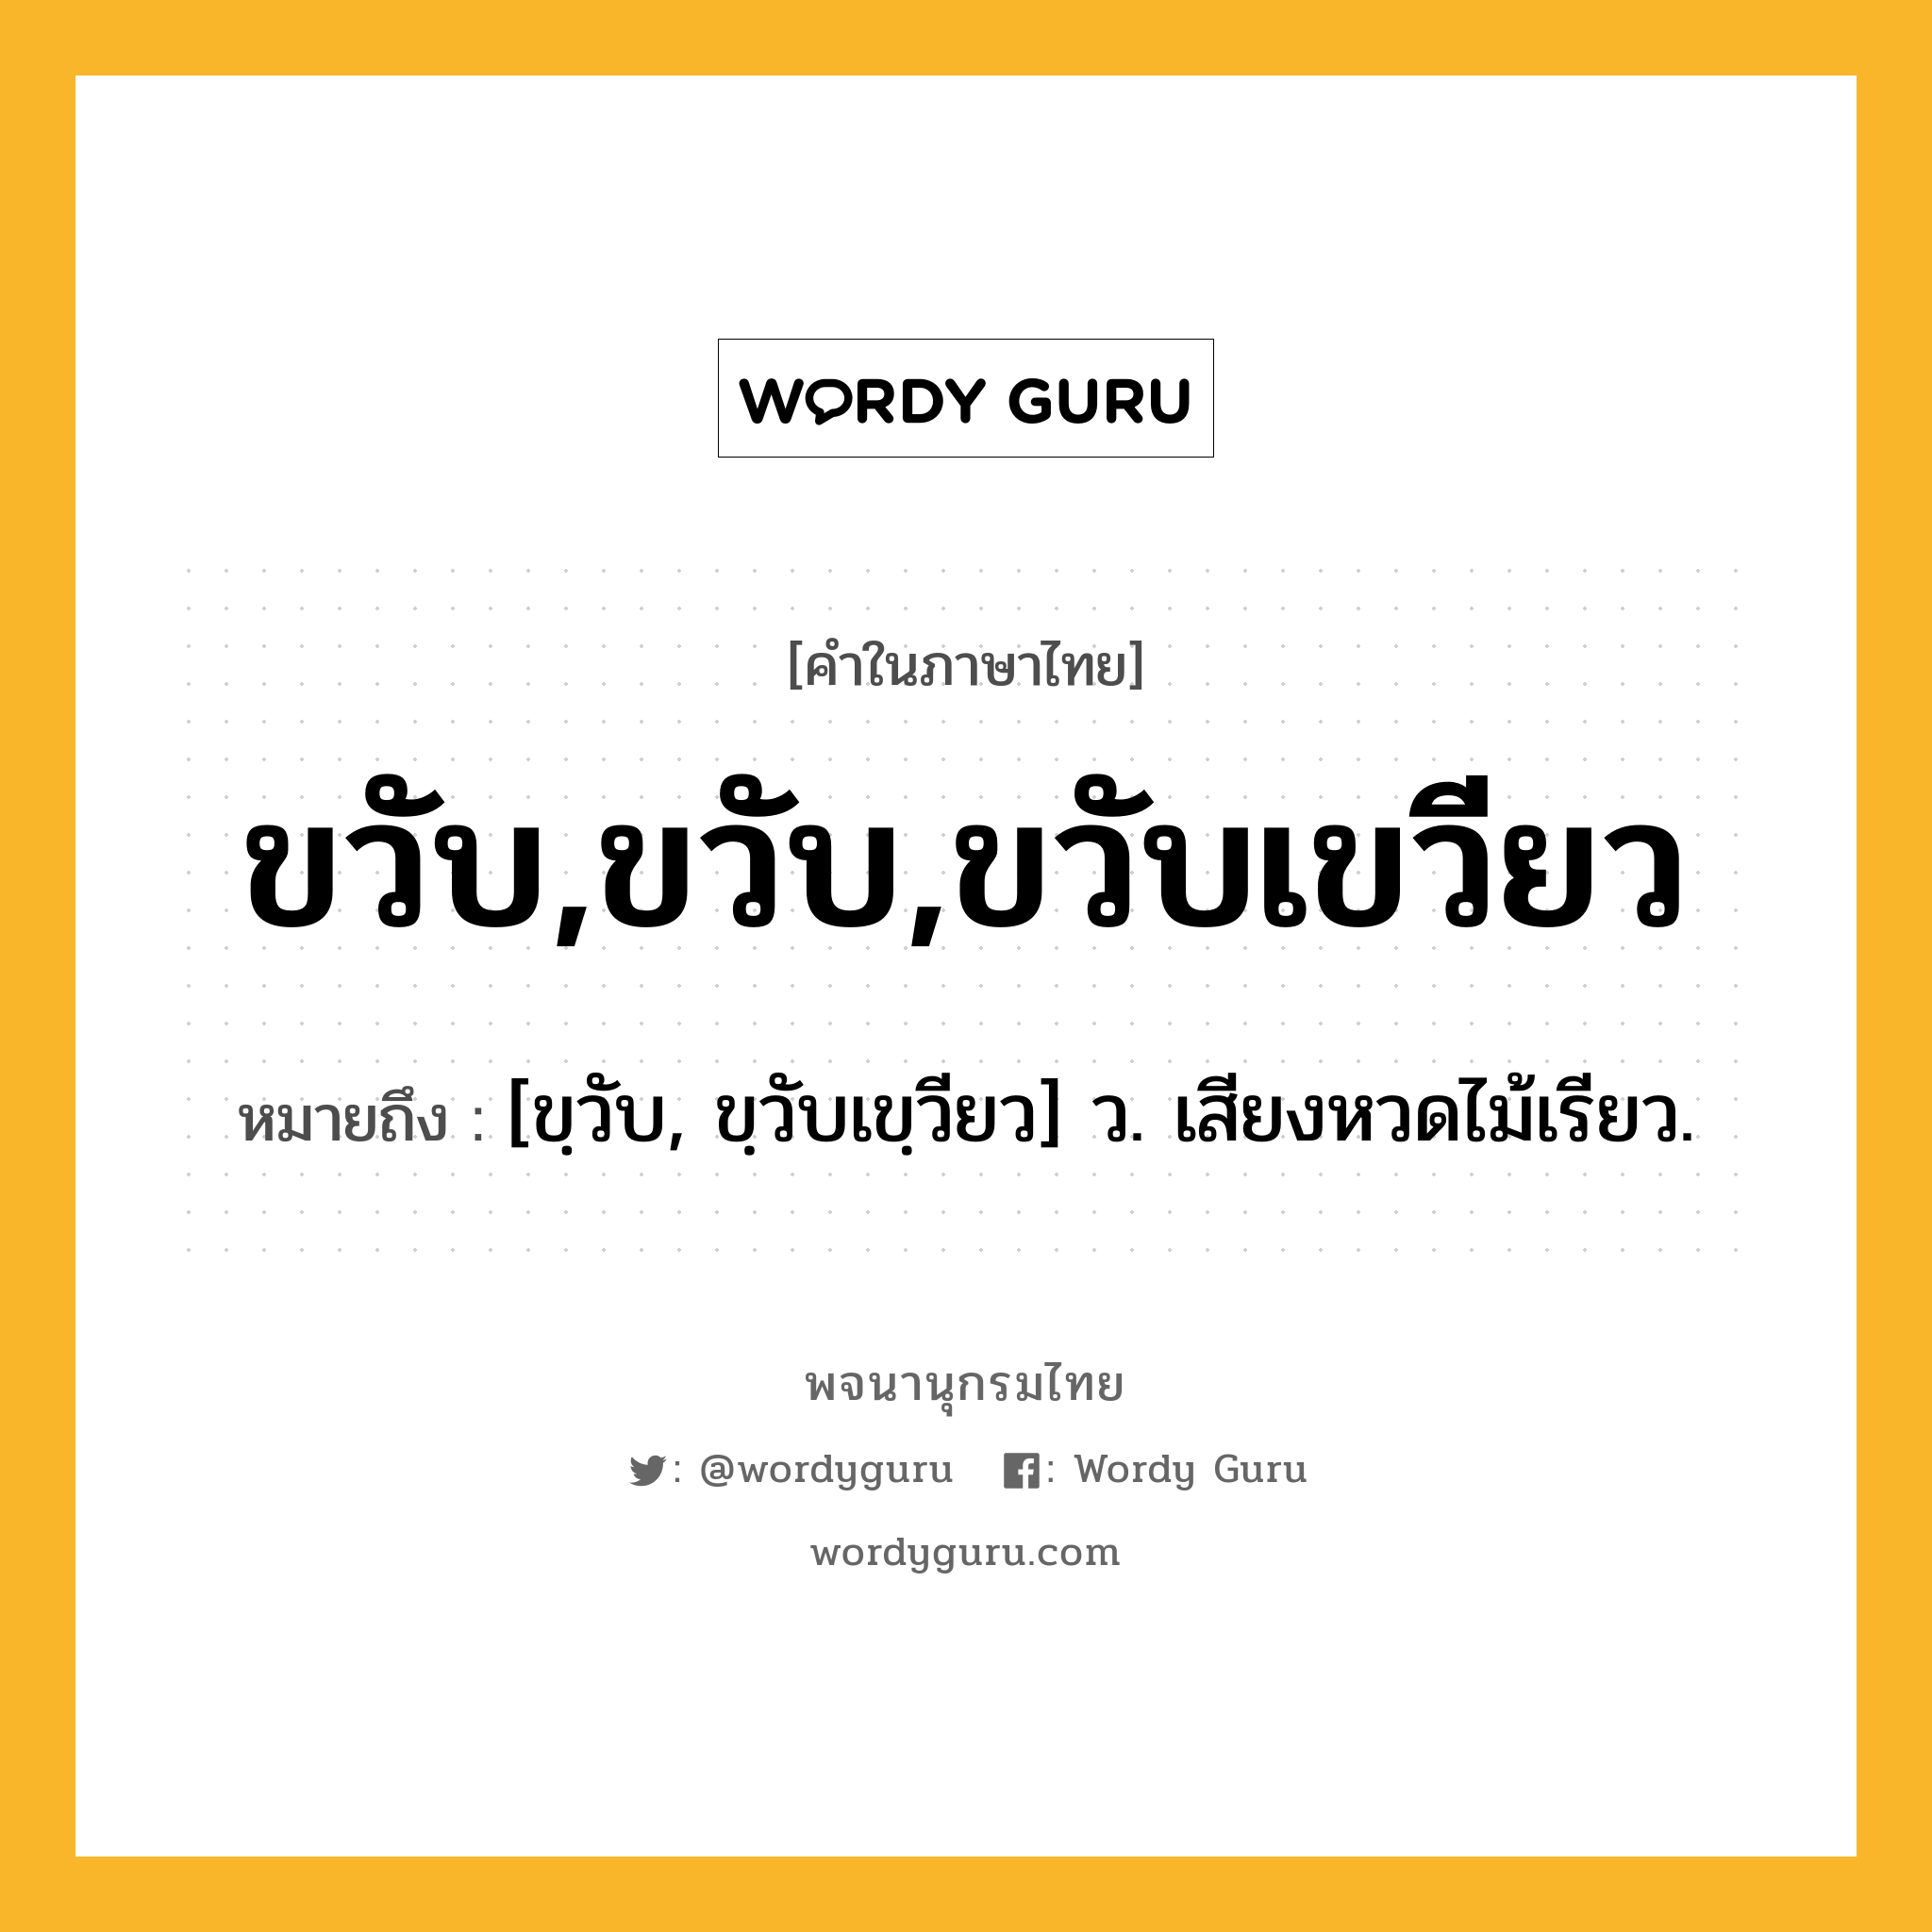 ขวับ,ขวับ,ขวับเขวียว หมายถึงอะไร?, คำในภาษาไทย ขวับ,ขวับ,ขวับเขวียว หมายถึง [ขฺวับ, ขฺวับเขฺวียว] ว. เสียงหวดไม้เรียว.